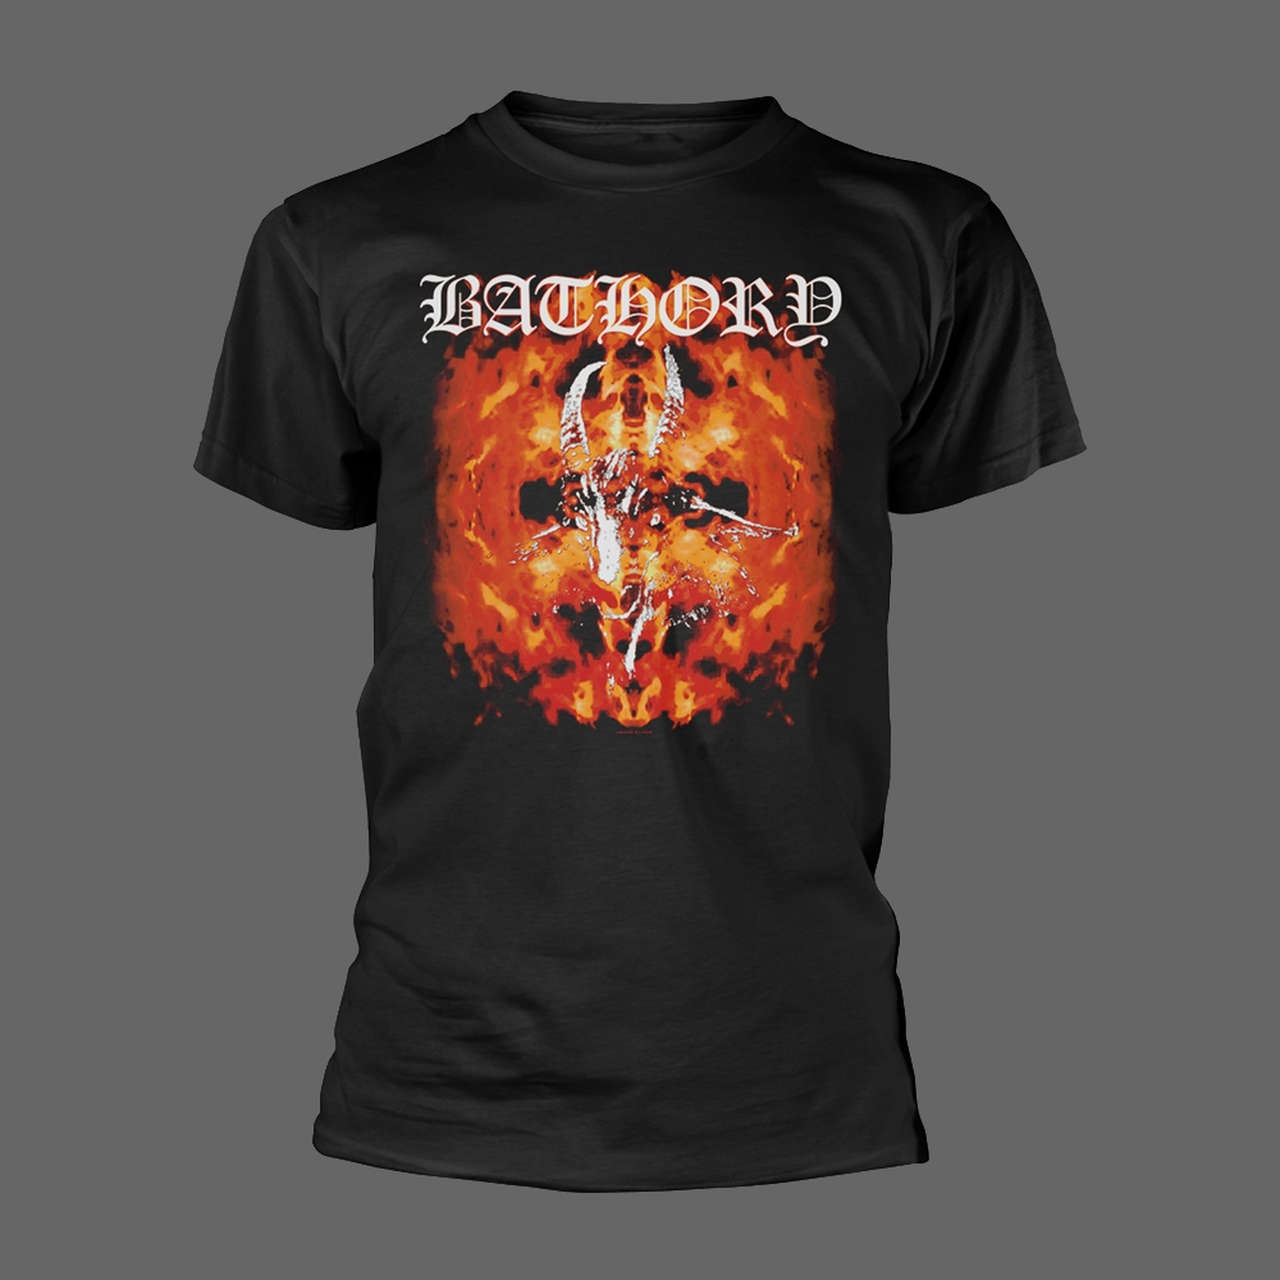 Bathory - Katalog (T-Shirt)